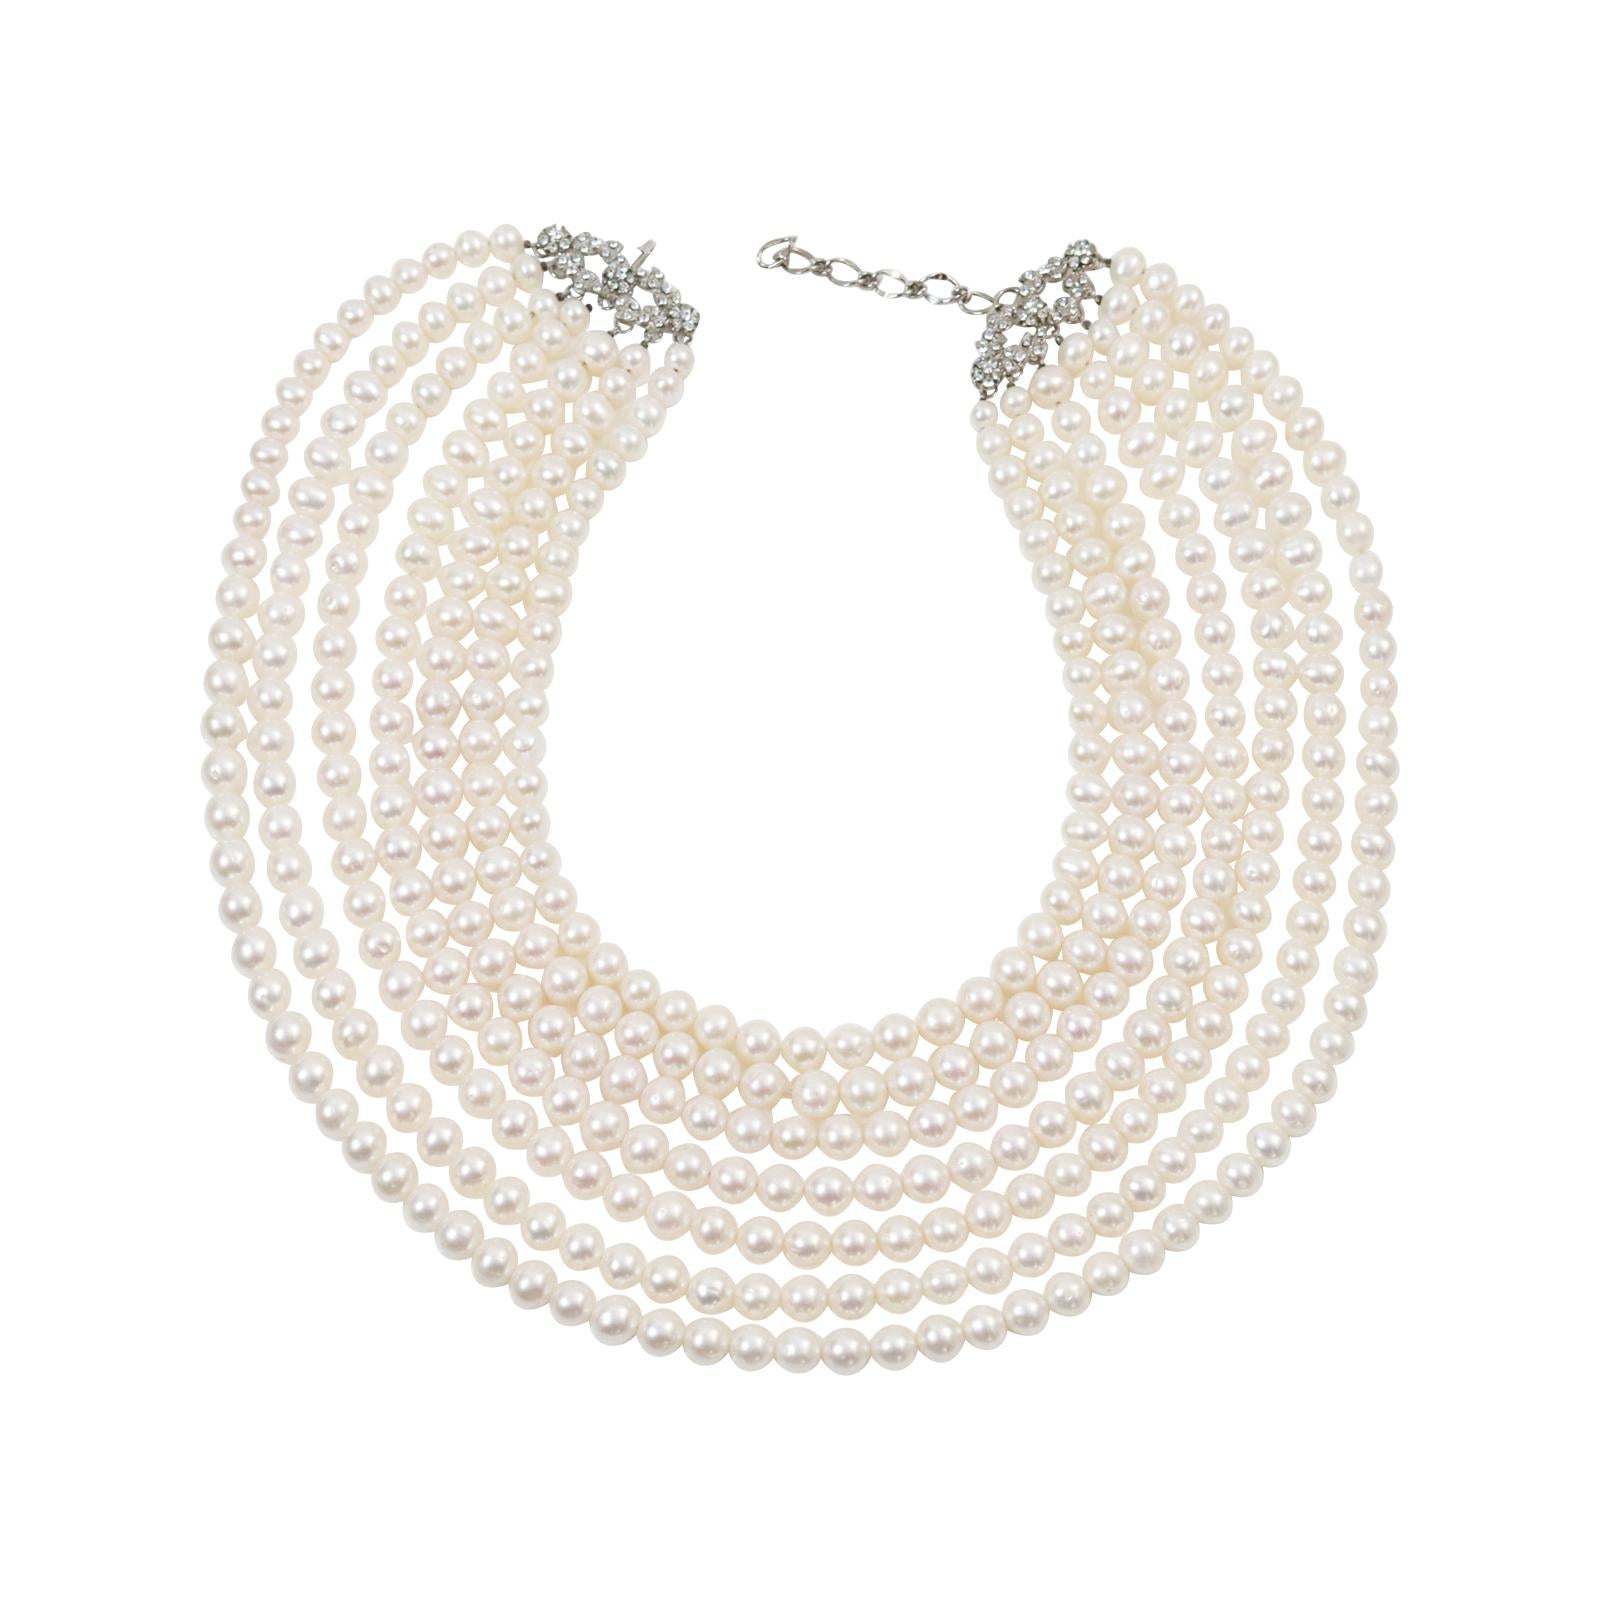 Vintage Siman Tu Faux  Cordons de perles d'eau douce Circa 2004.  Il y a cinq rangs de perles de longueurs graduées qui sont en excellente forme.  Bien fait et substantiel.  Ils sont réunis à chaque extrémité par une double rangée de petites fleurs